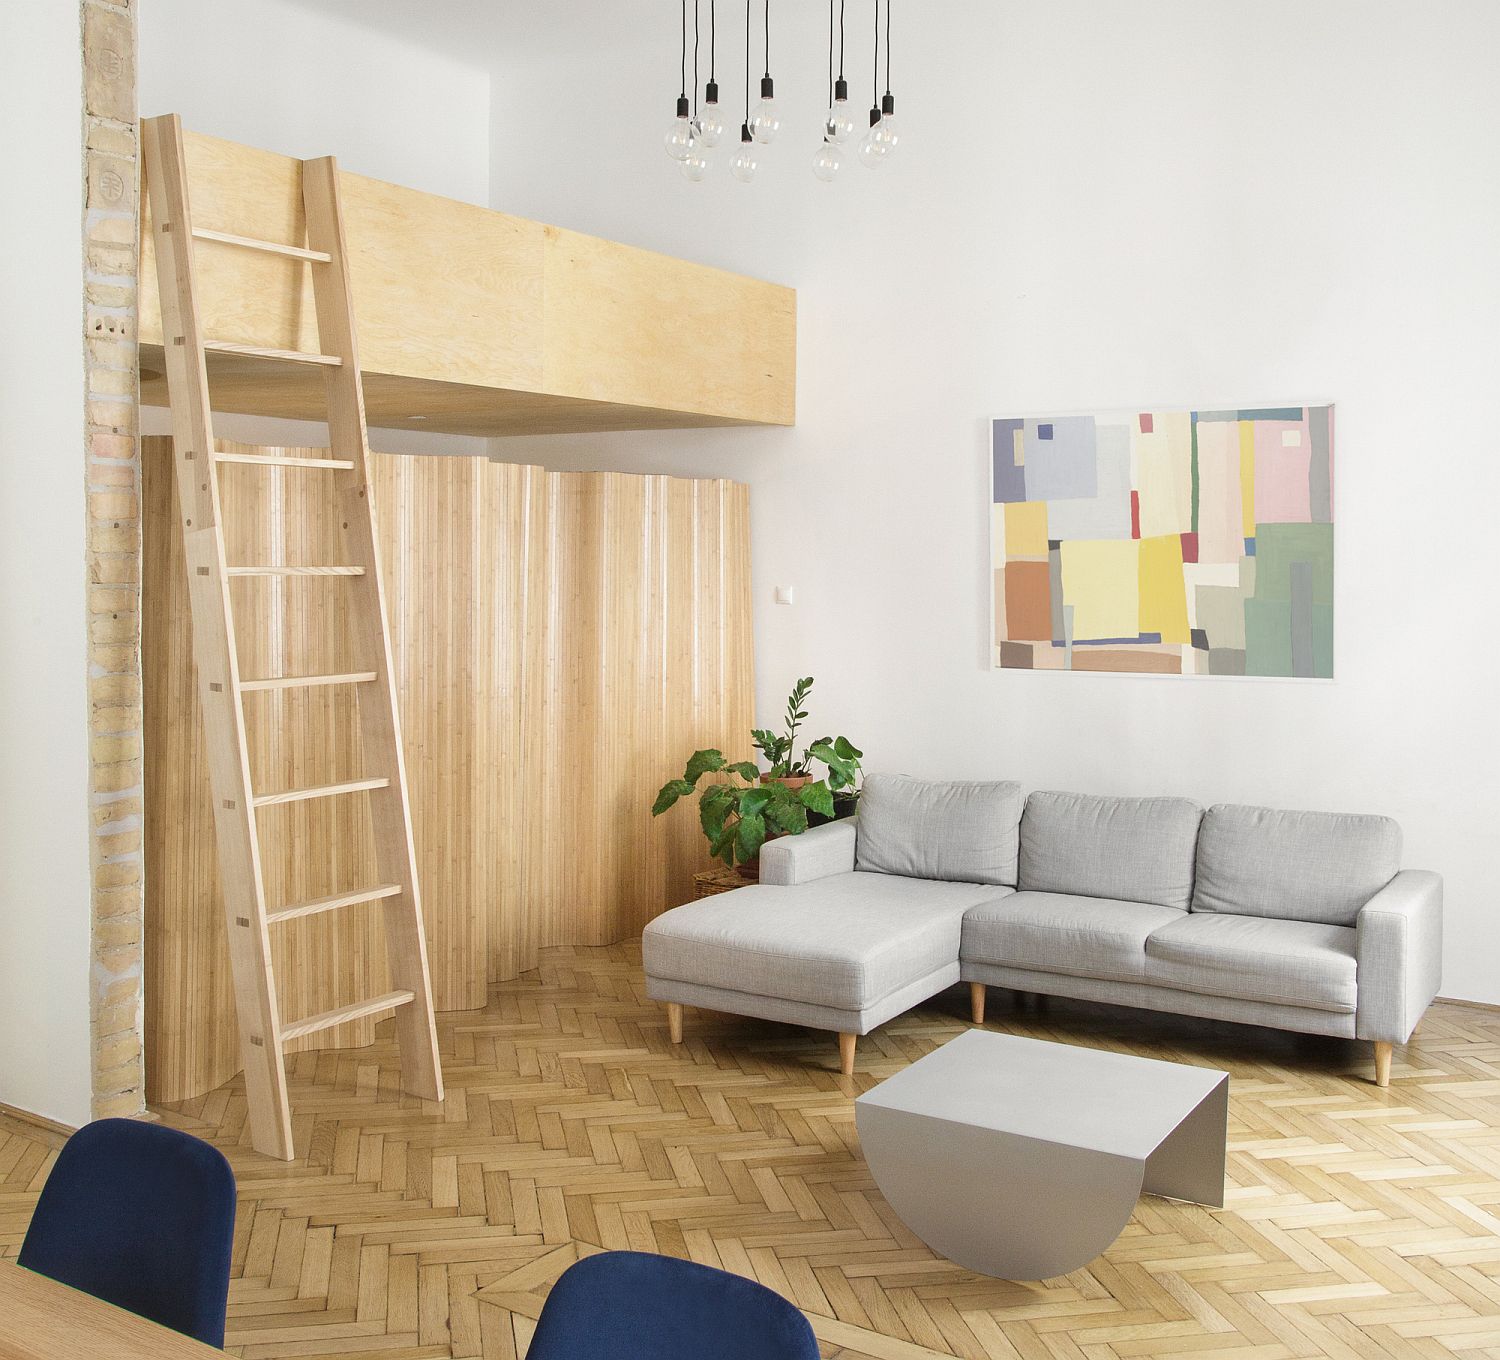 Phòng khách căn hộ có gác lửng được bài trí đơn giản với bộ ghế sofa màu xám sáng, bàn trà kim loại cùng tông; cây xanh, tranh tường tạo điểm nhấn.